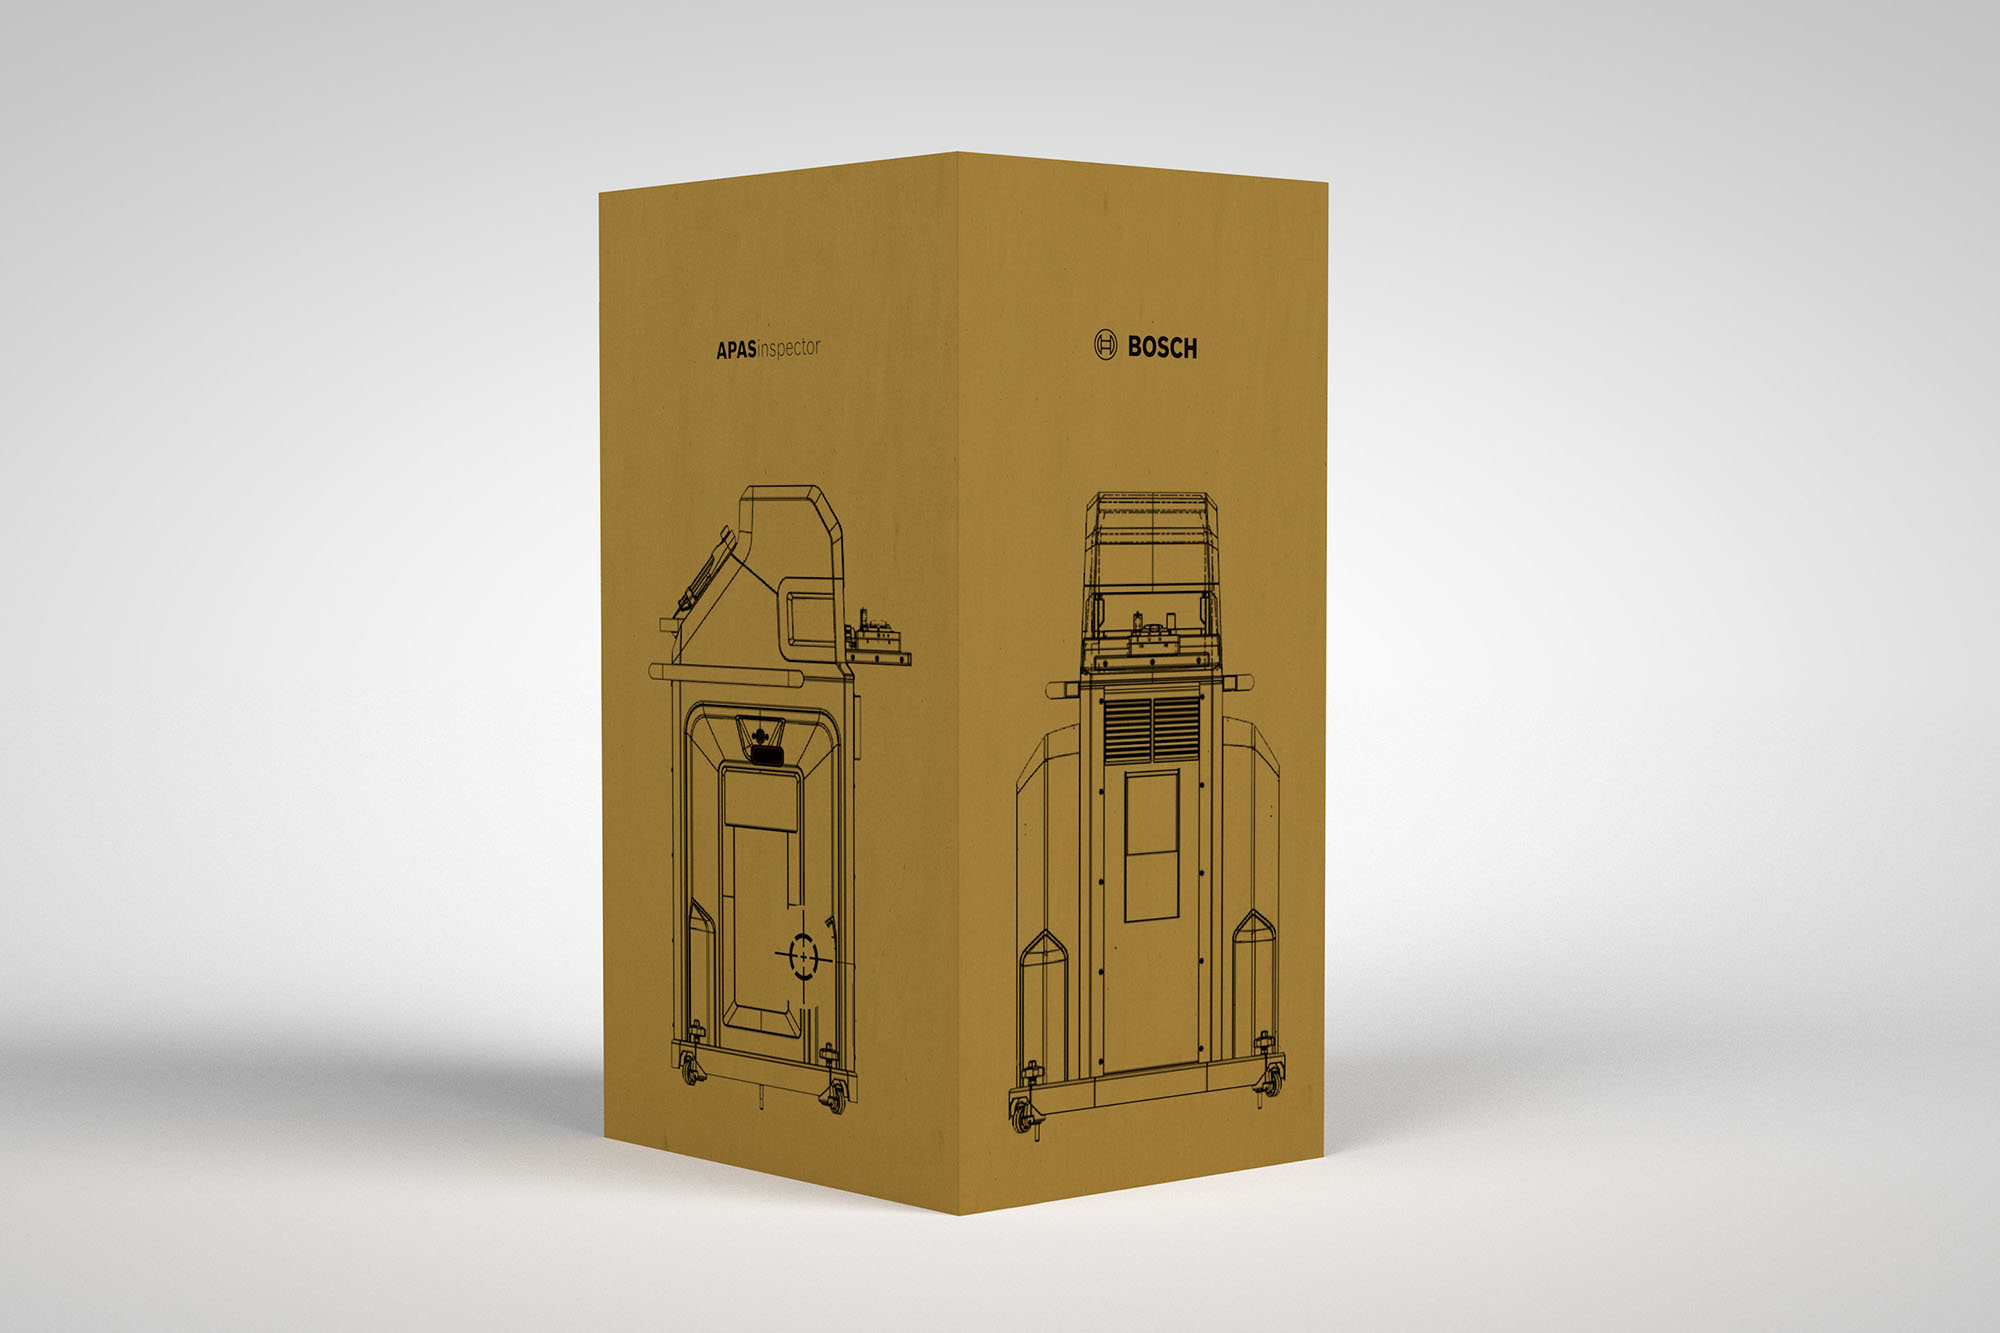 Bosch / »APAS« Packaging